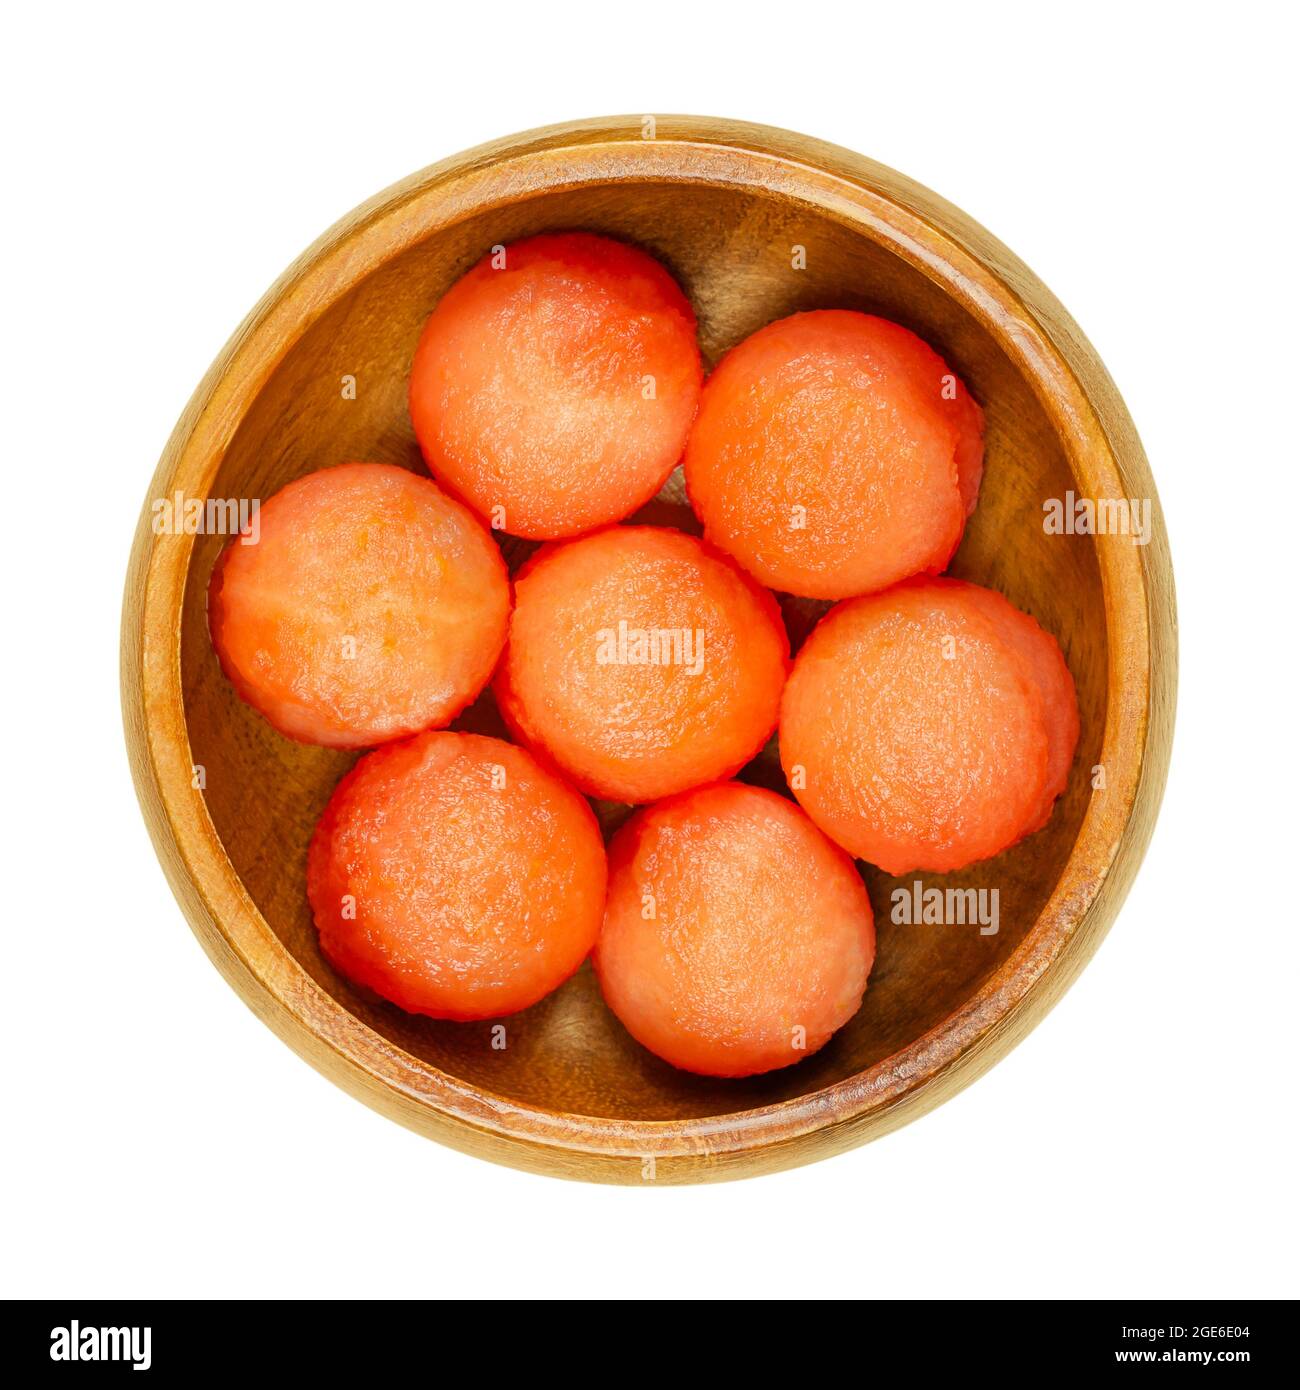 Wassermelonenkugeln, in einer Holzschale. Mit einem Melonenballer frisch ausgeschnittene Kugeln, verzehrfertige Stücke reifer und kernloser Frucht von Citrullus lanatus. Stockfoto